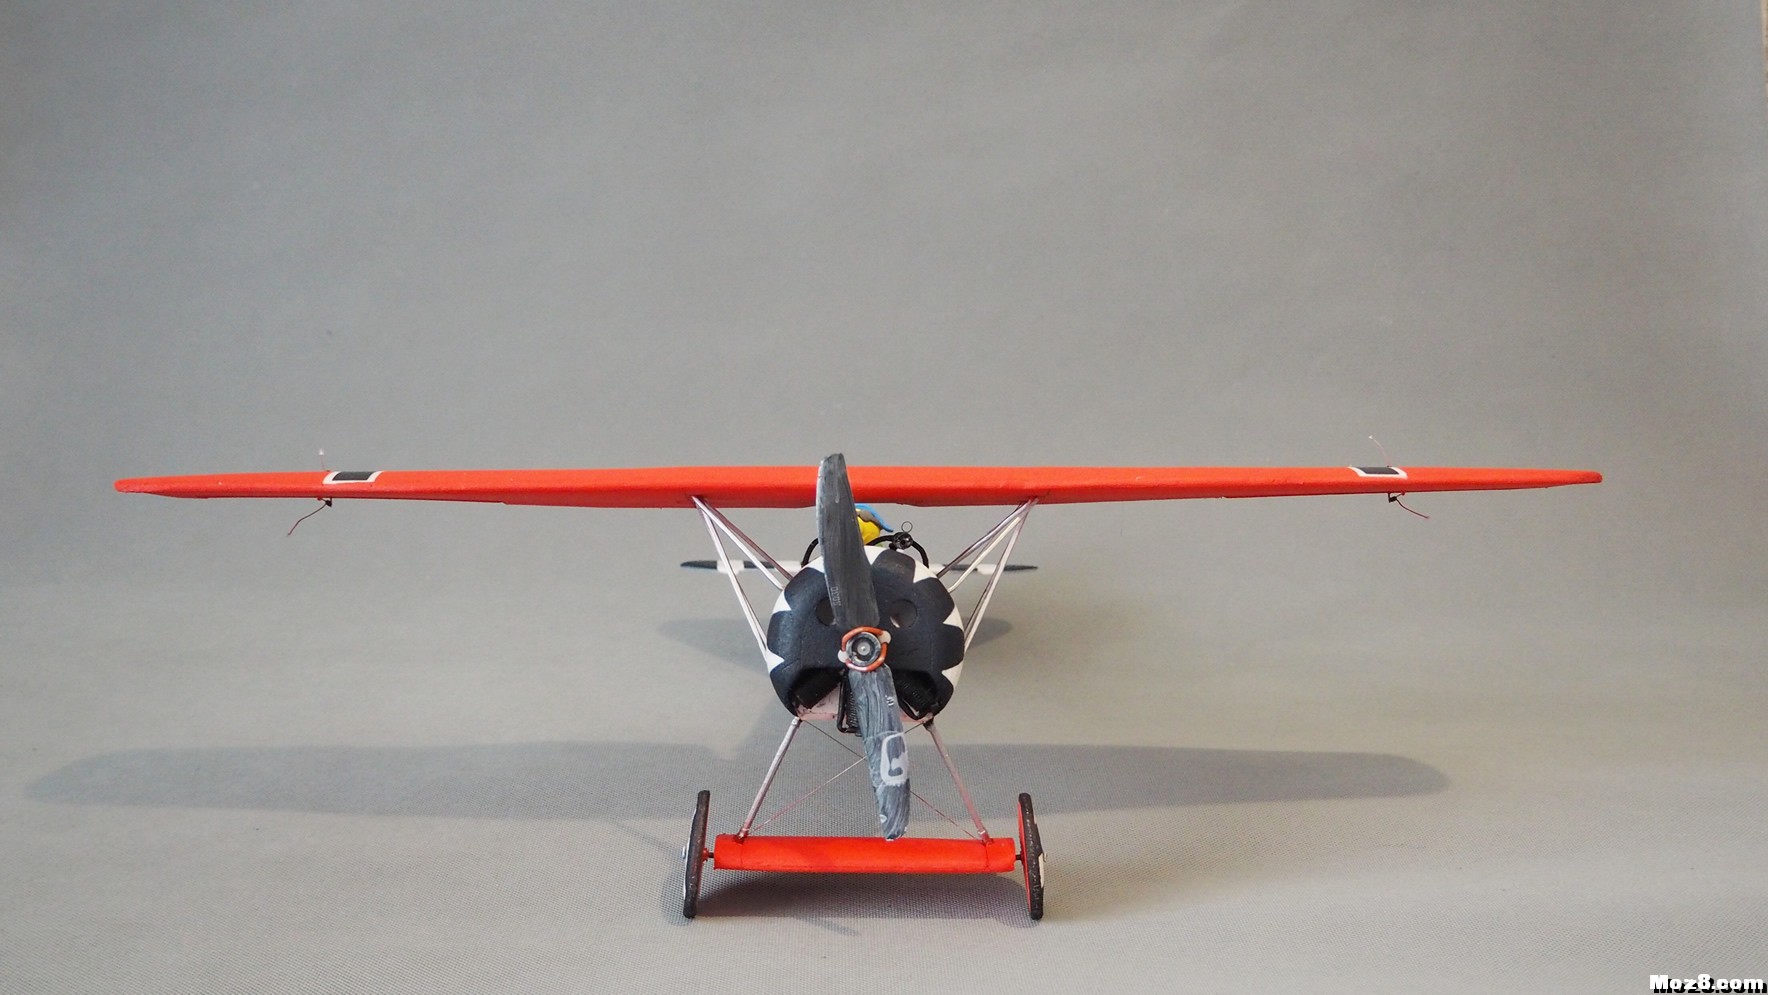 【爱因制造】迷你Fokker D-VIII战机 舵机,接收机,空心杯,bilibili,视频 作者:xbnlkdbxl 6167 